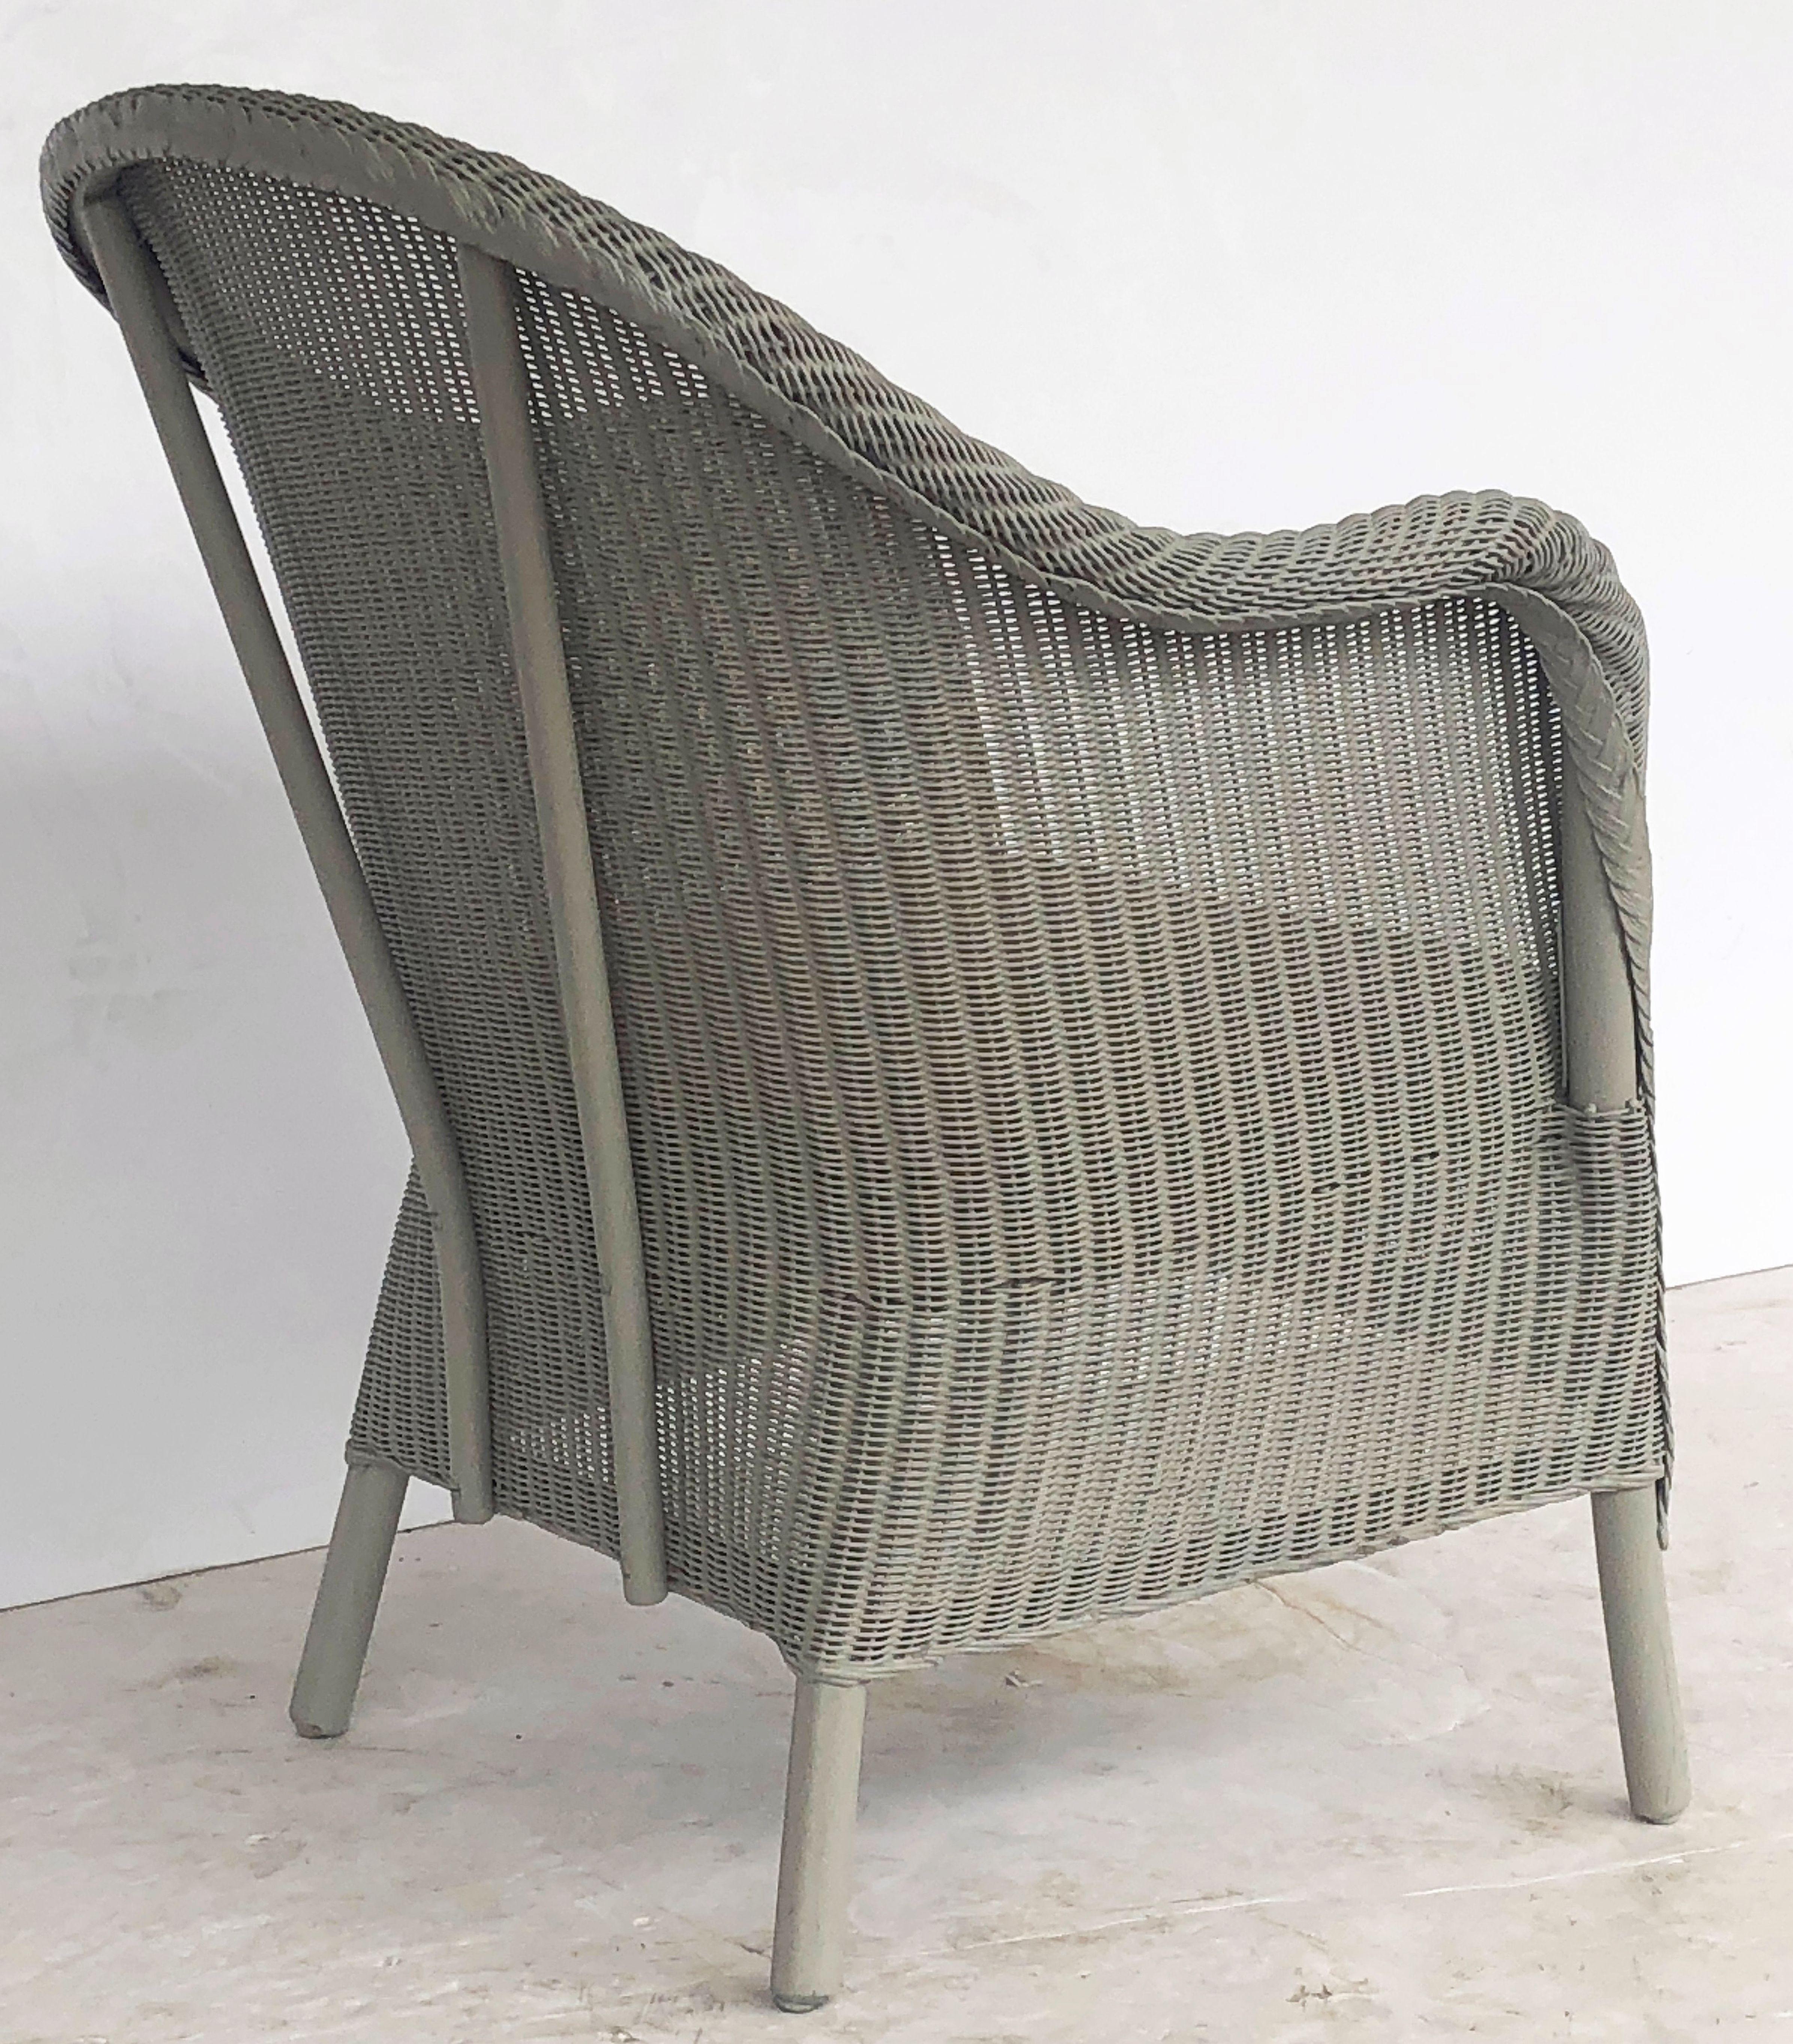 English Wicker Garden or Lounge Chair by Lloyd Loom 2